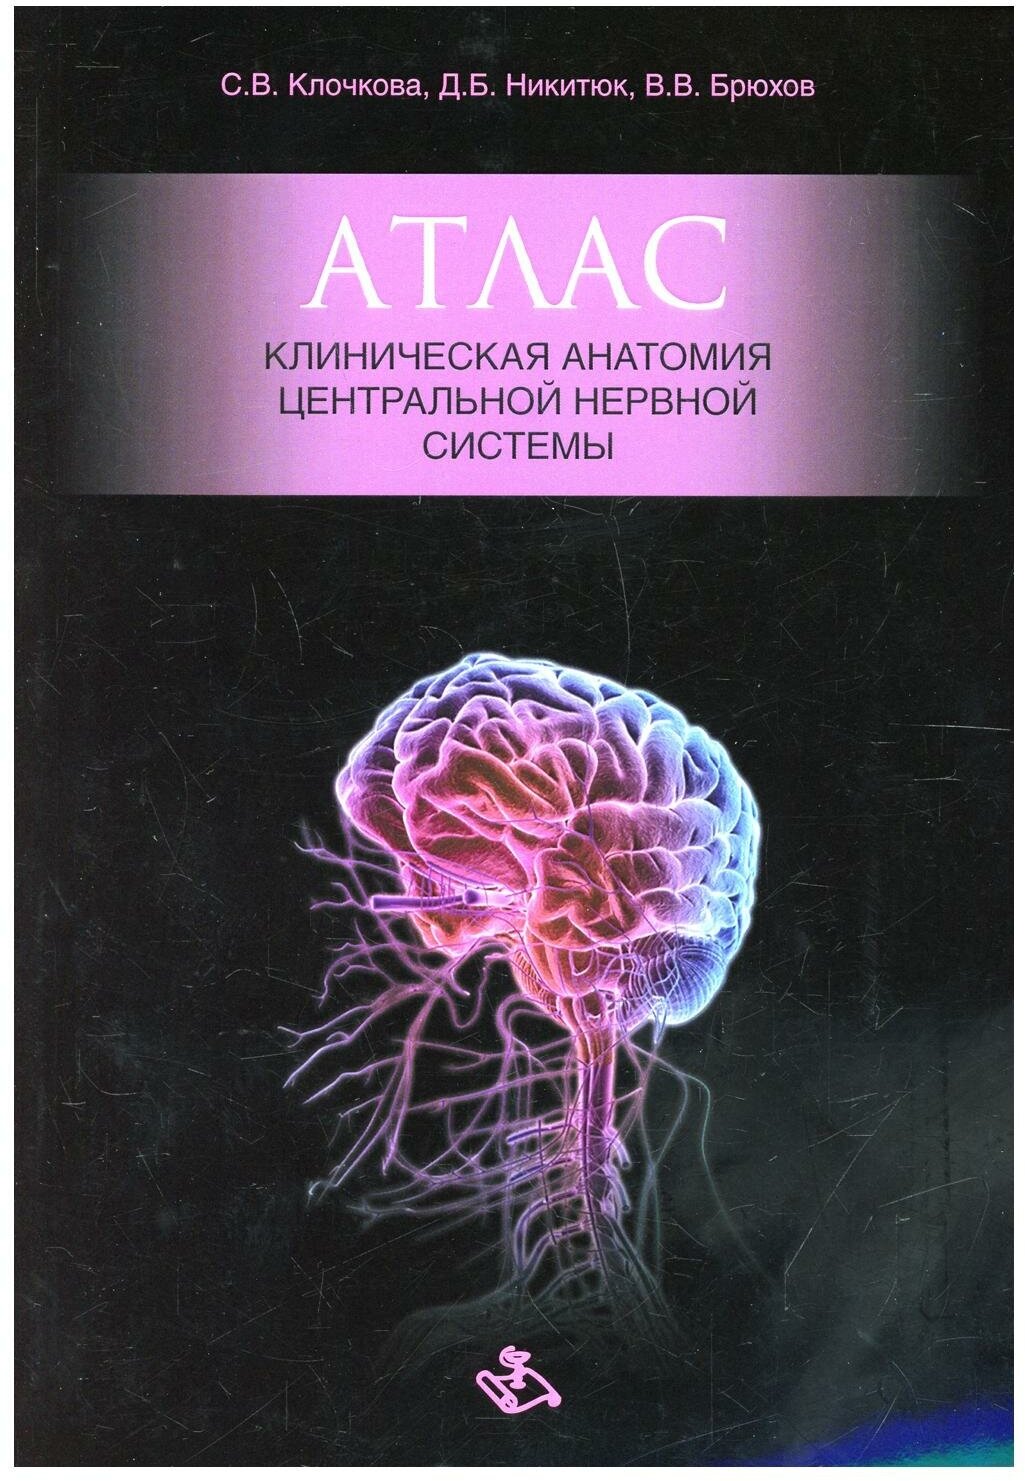 Атлас. Клиническая анатомия центральной нервной системы